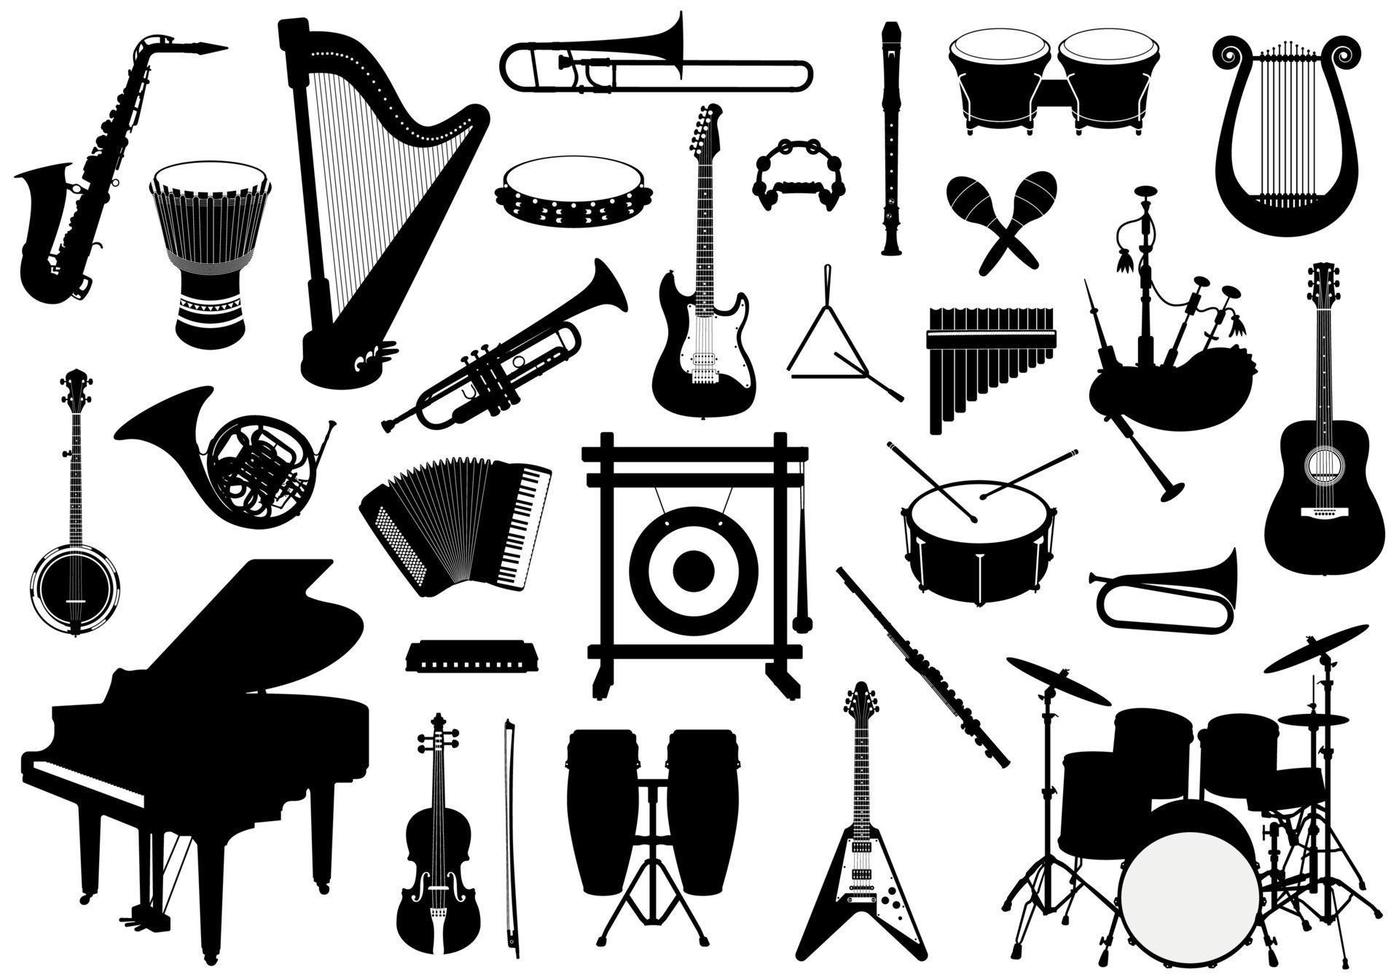 reeks van musical instrumenten silhouetten, trommels, percussie, toetsenbord en draad instrumenten illustraties vector